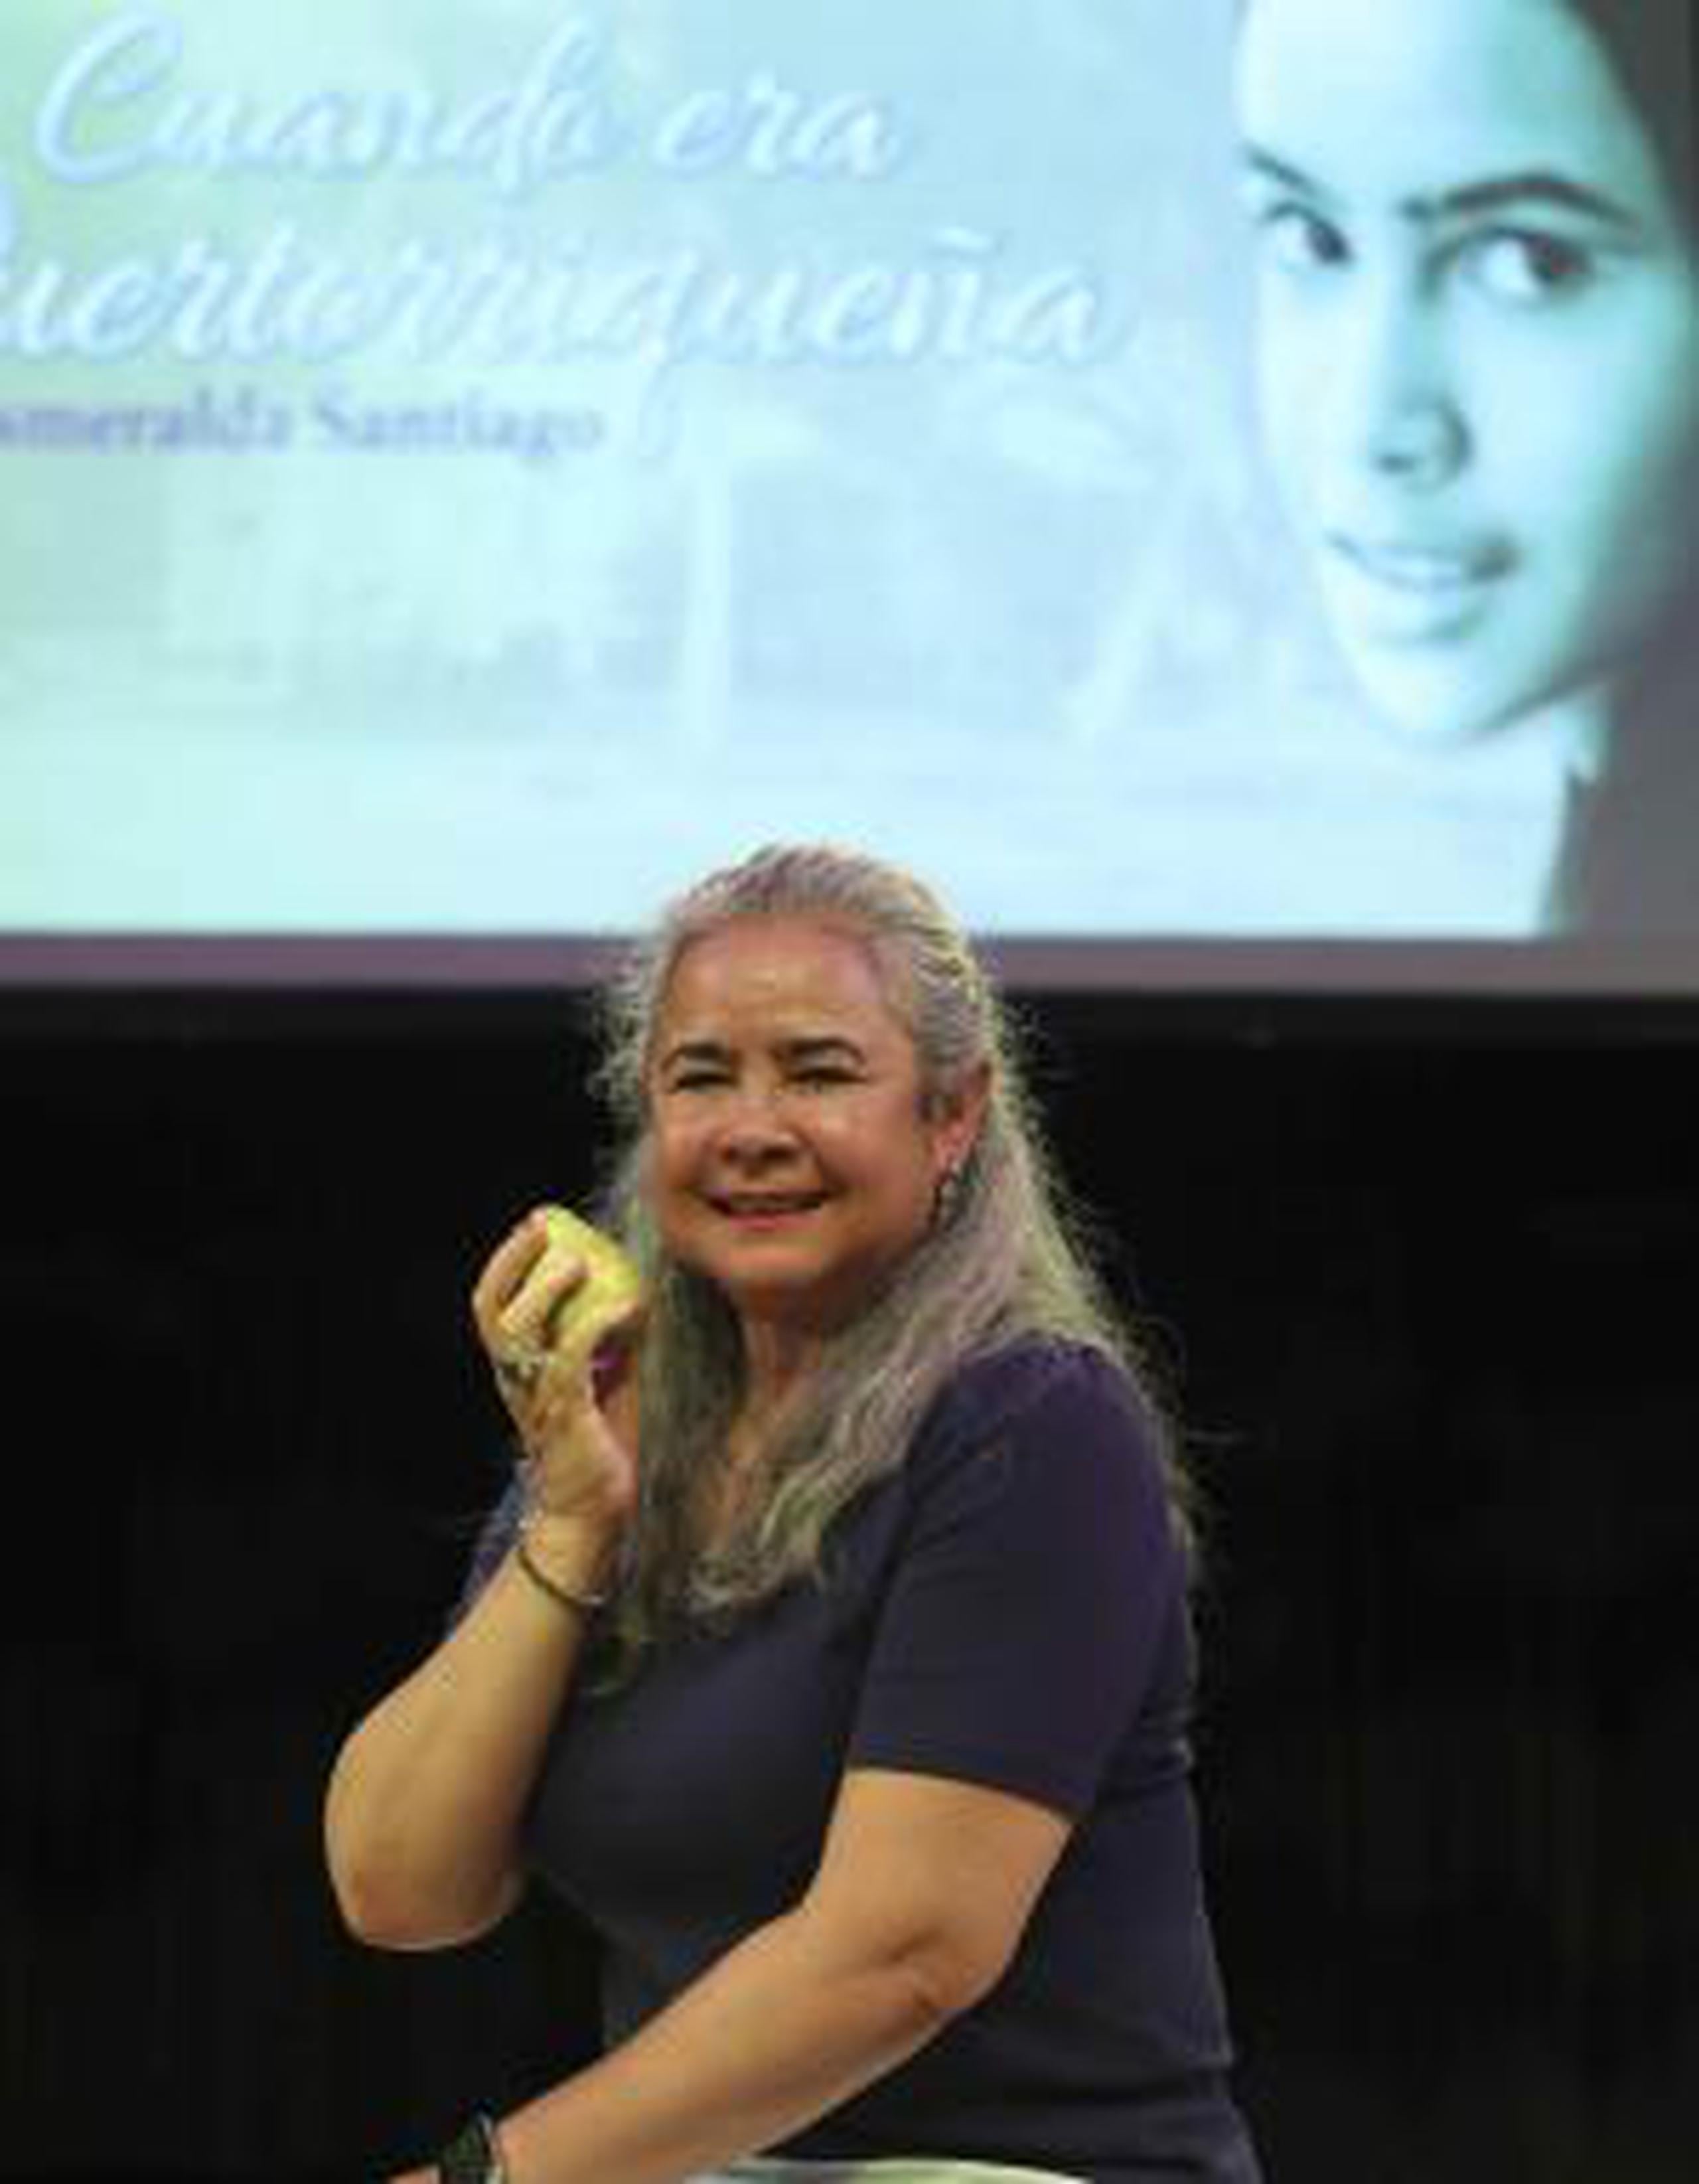 La escritora Esmeralda Santiago se encuentra en Puerto Rico para ver por primera vez en el teatro su novela “Cuando era puertorriqueña”. (vanessa.serra@gfrmedia.com)